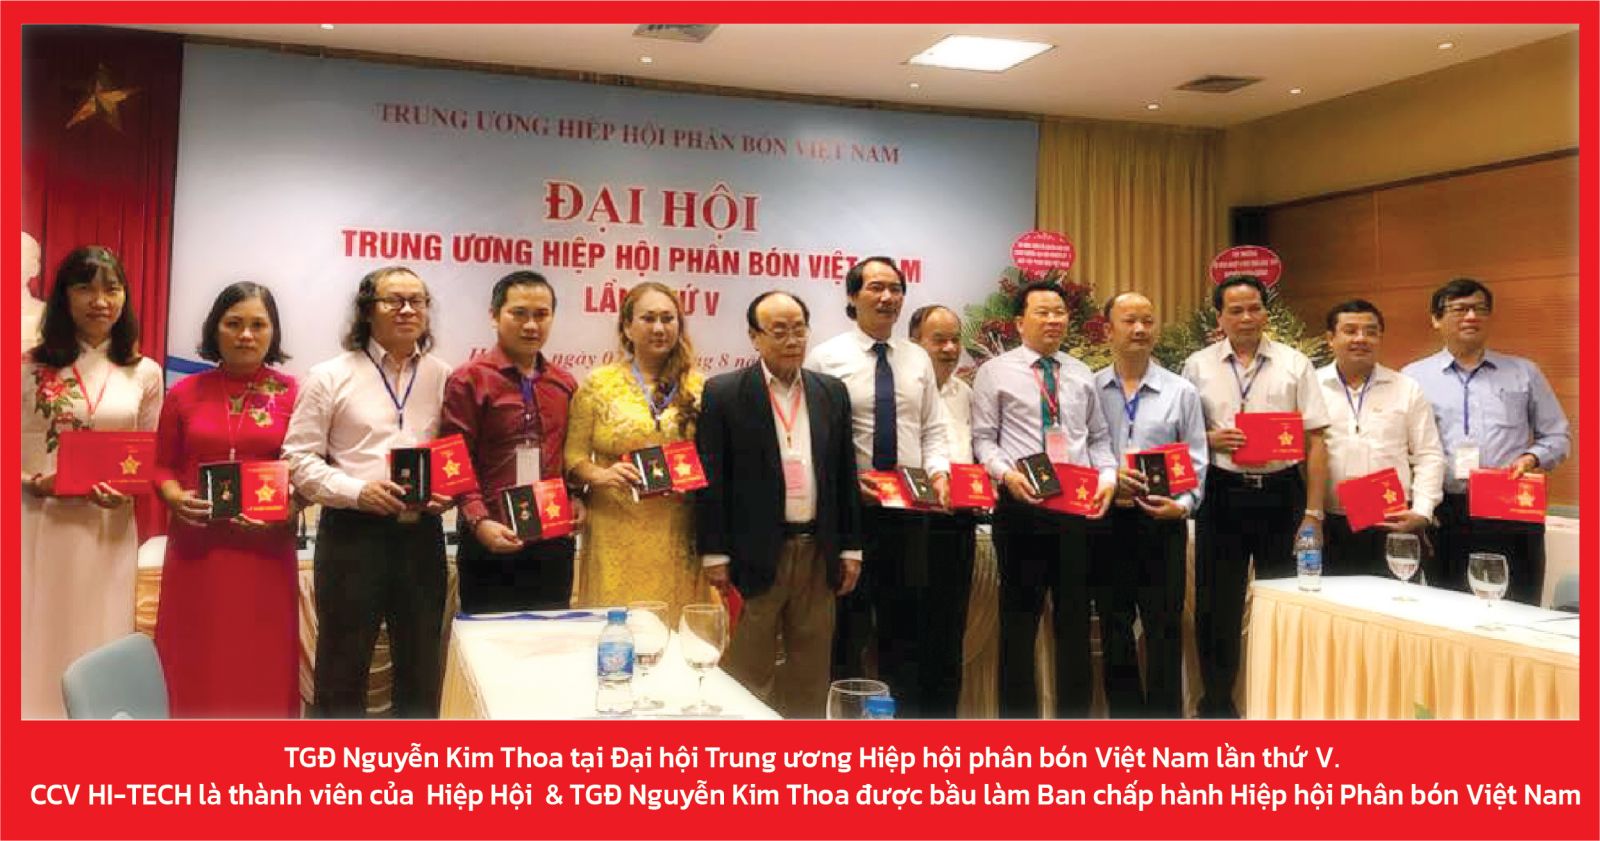 Hiệp hội phân bón Việt Nam